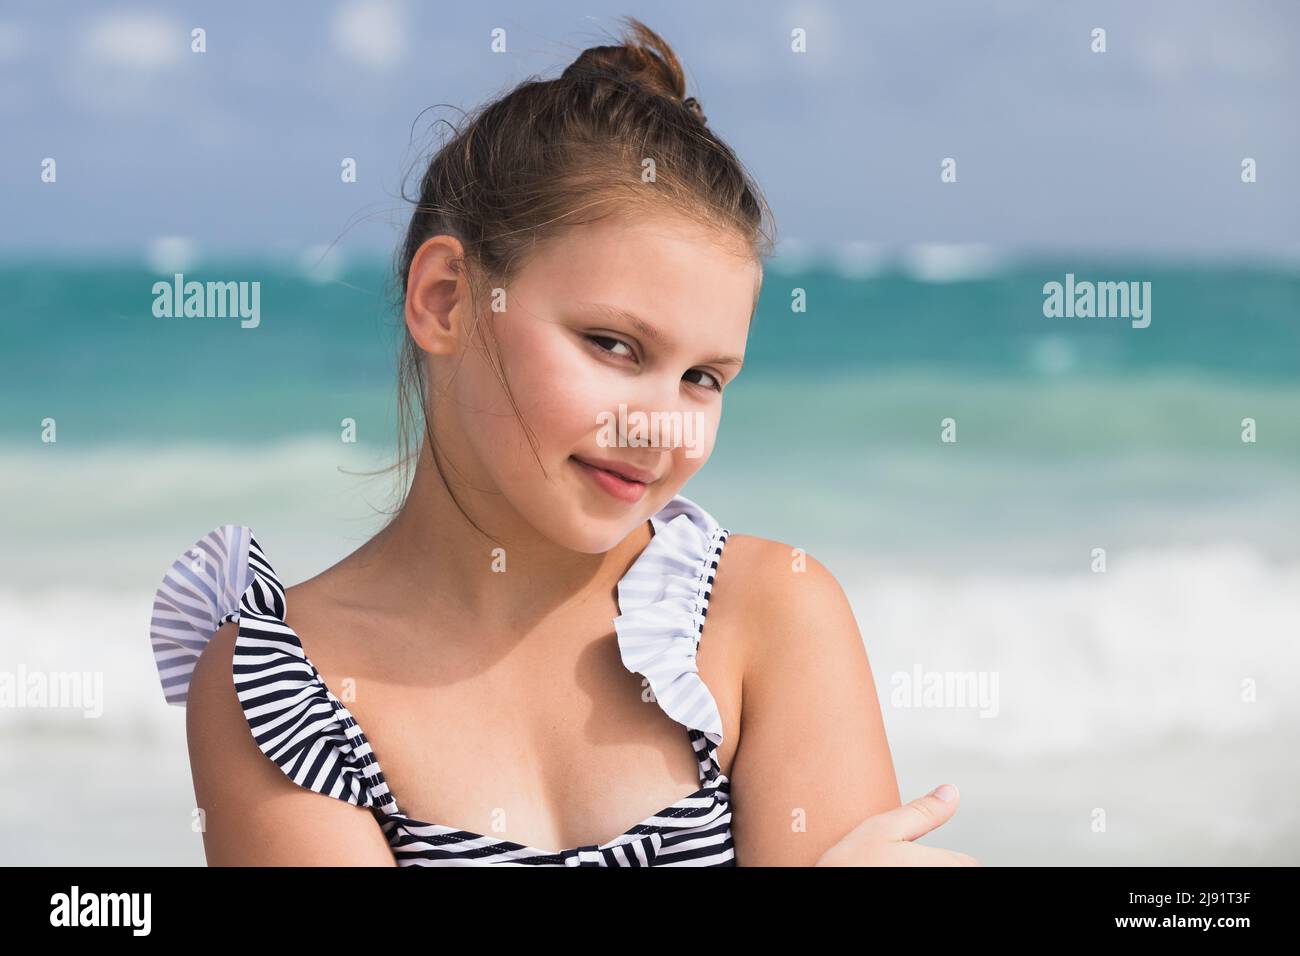 Ritratto di bella bambina in costume da bagno preso alla costa dell'oceano. Foto all'aperto scattate in una giornata di sole Foto Stock